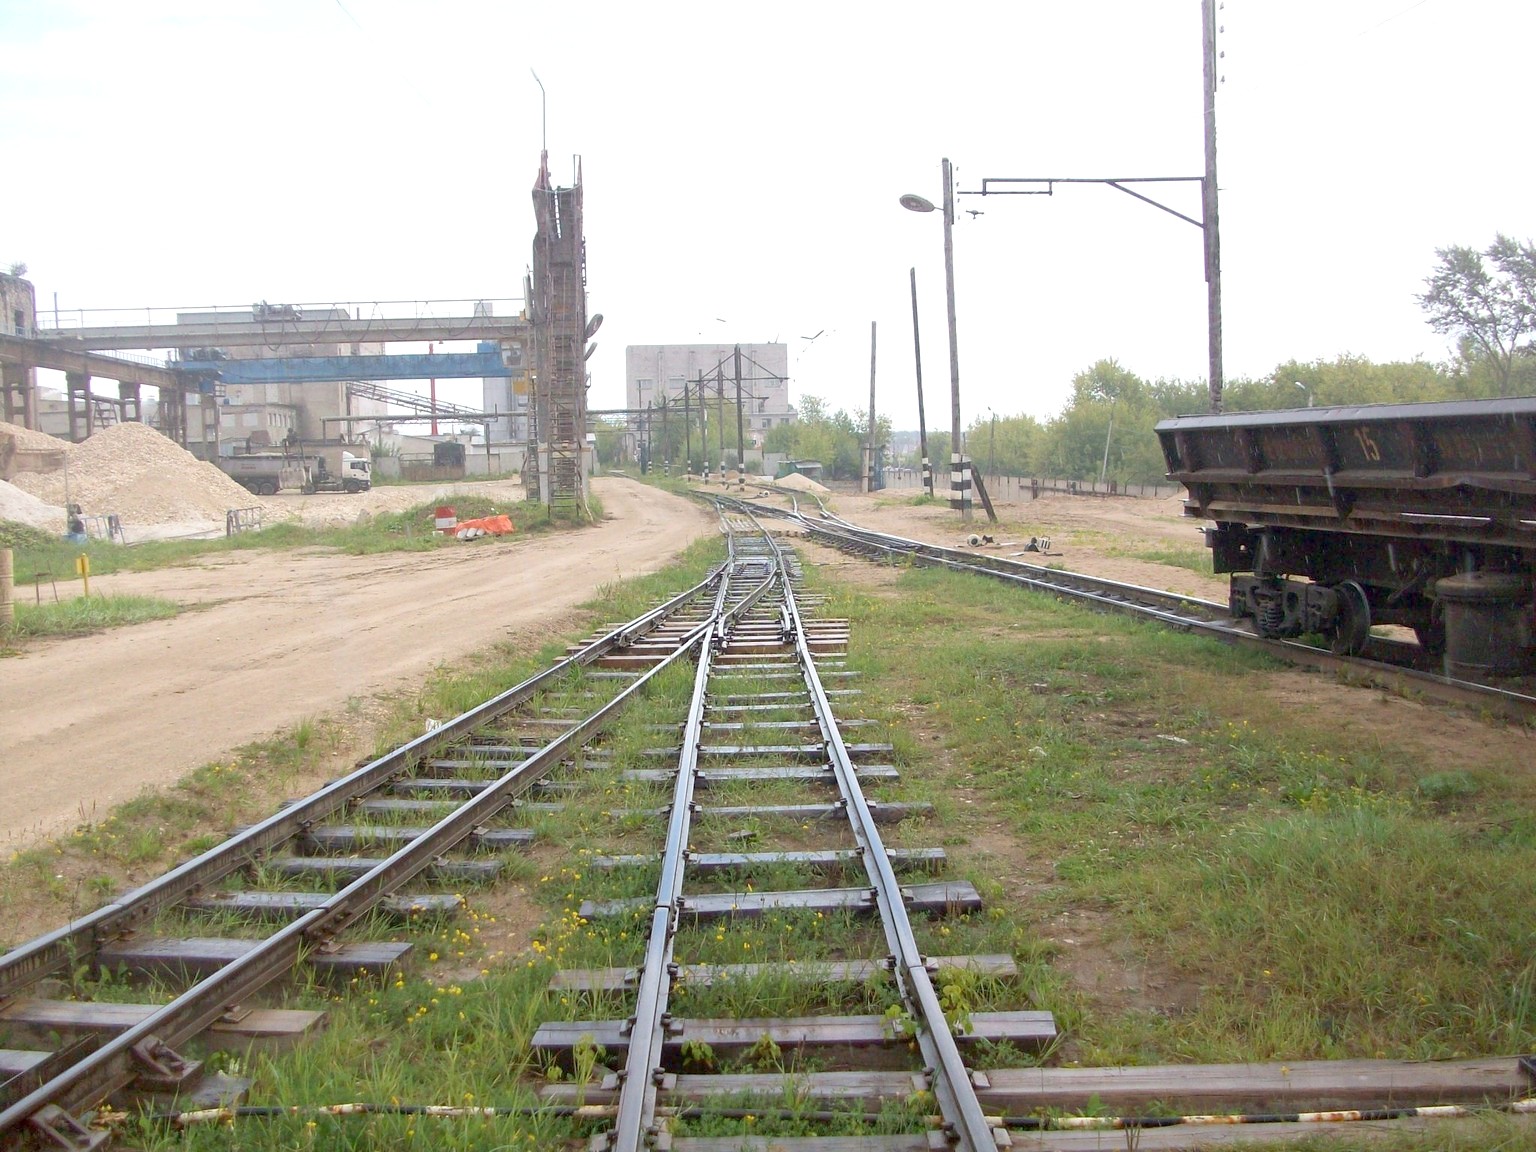 Узкоколейная железная дорога  Тверского комбината строительных материалов №2 — фотографии, сделанные в 2015 году (часть 8)